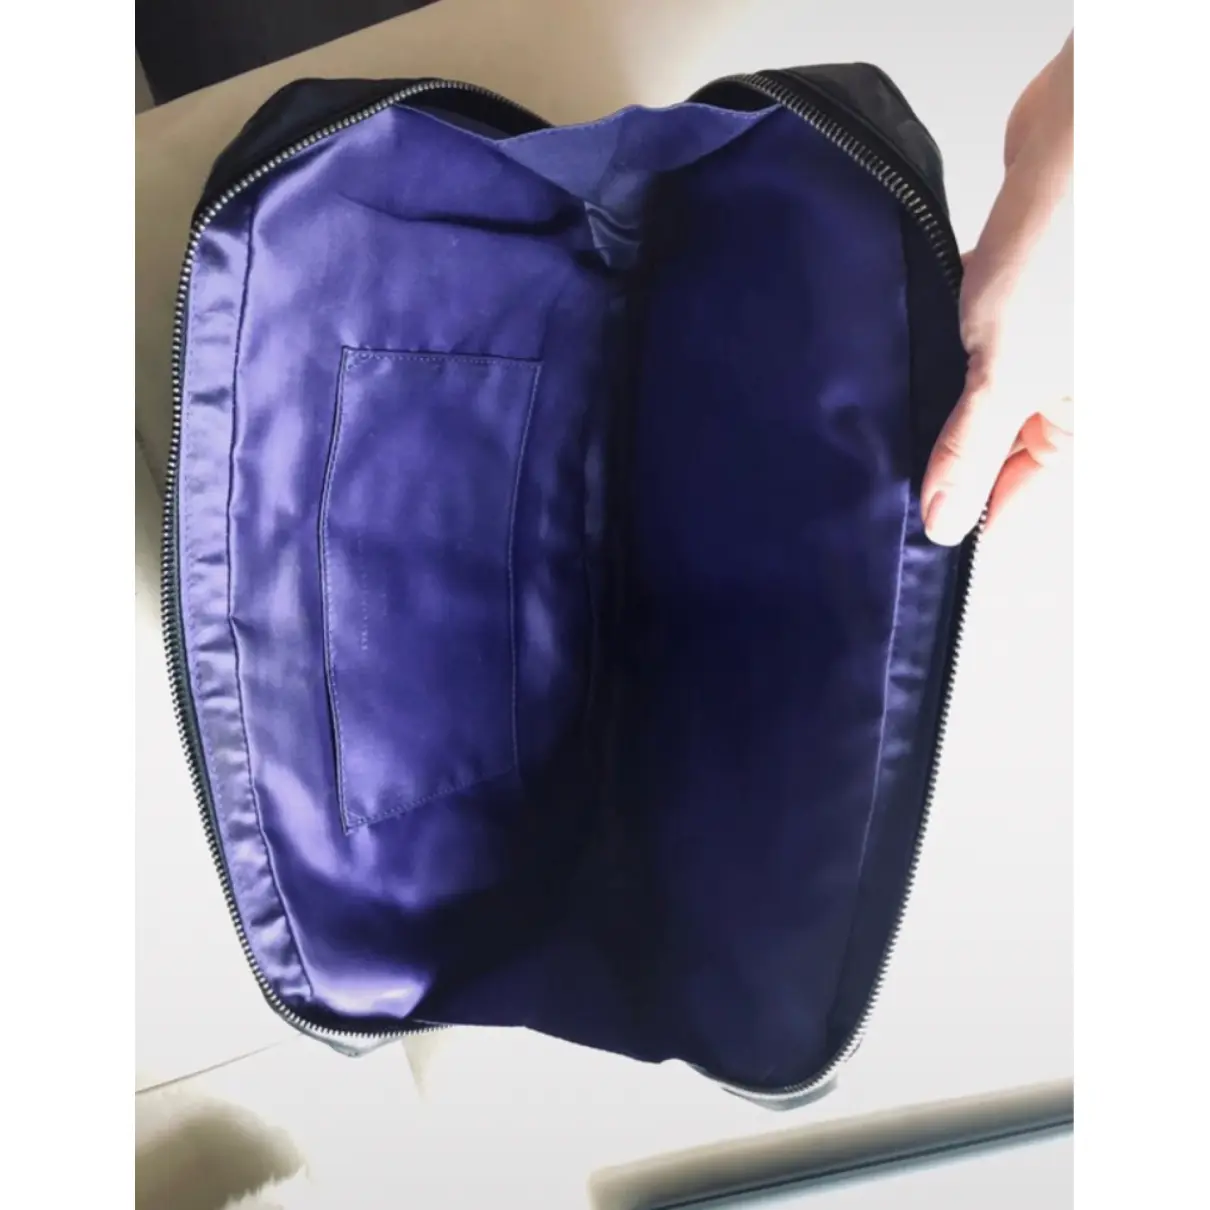 Vegan leather clutch bag Stella McCartney